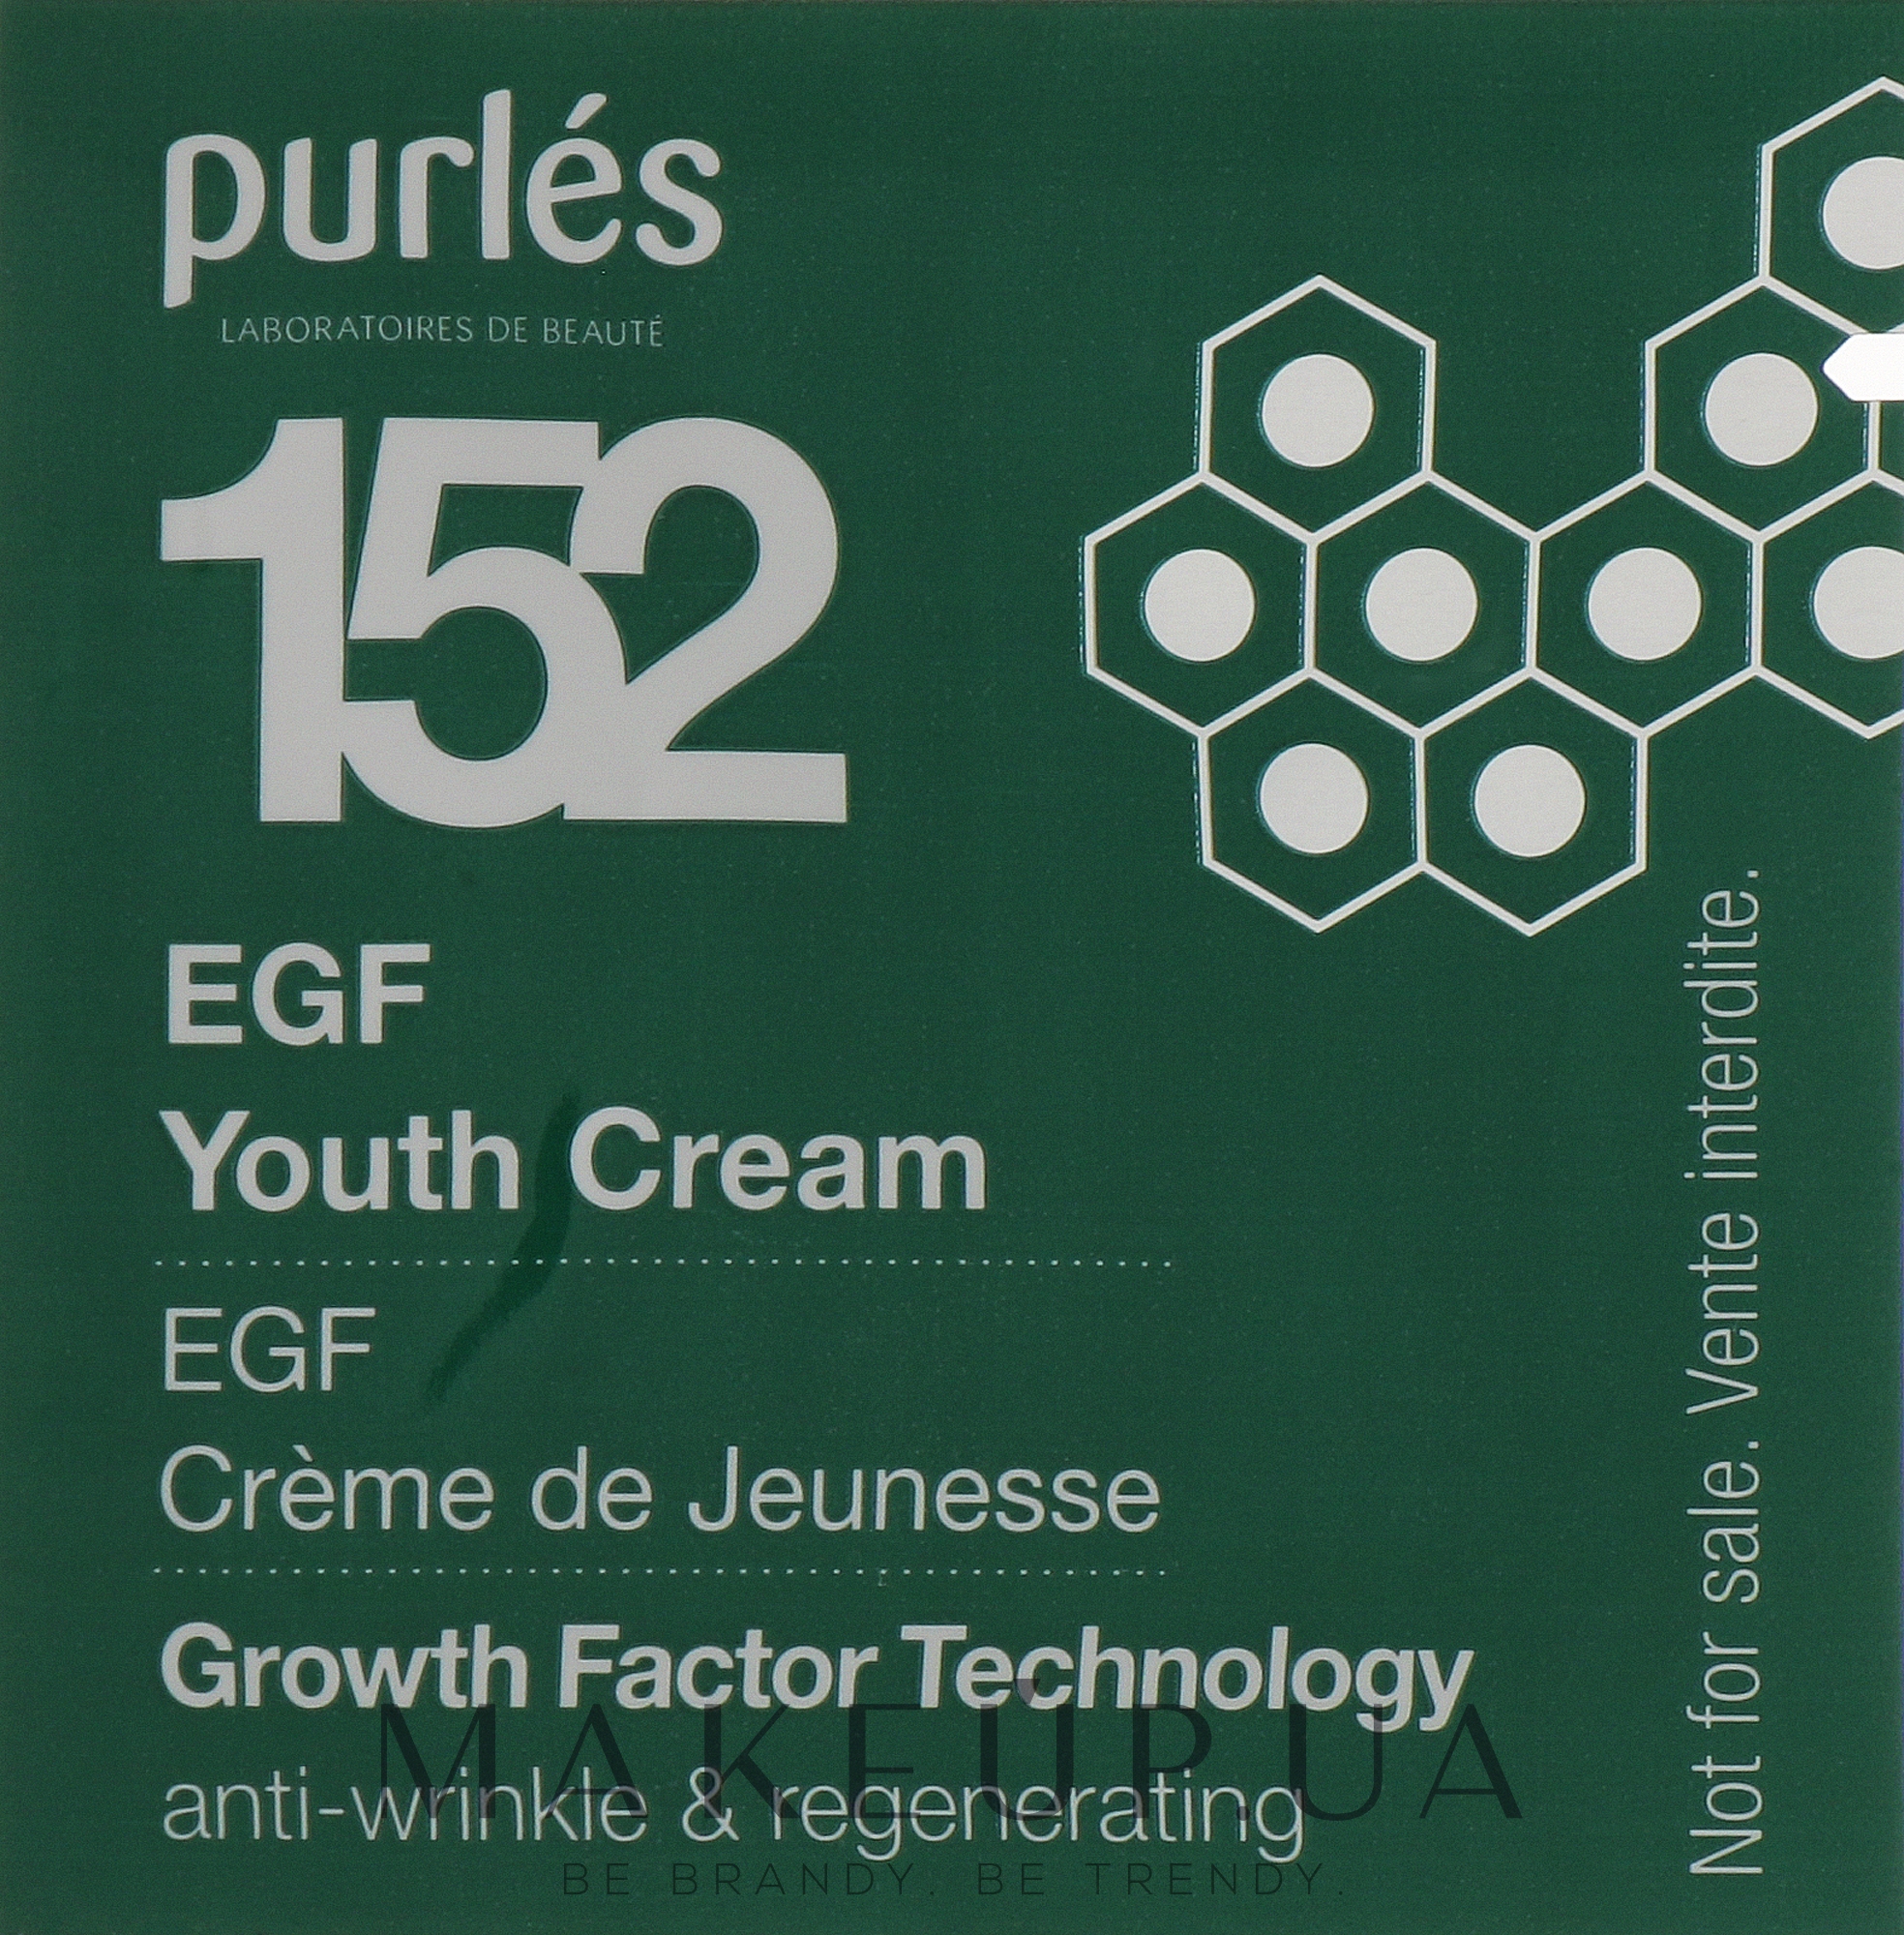 Регенерувальний омолоджувальний крем для обличчя - Purles Growth Factor Technology 152 Youth Cream (пробник) — фото 1ml